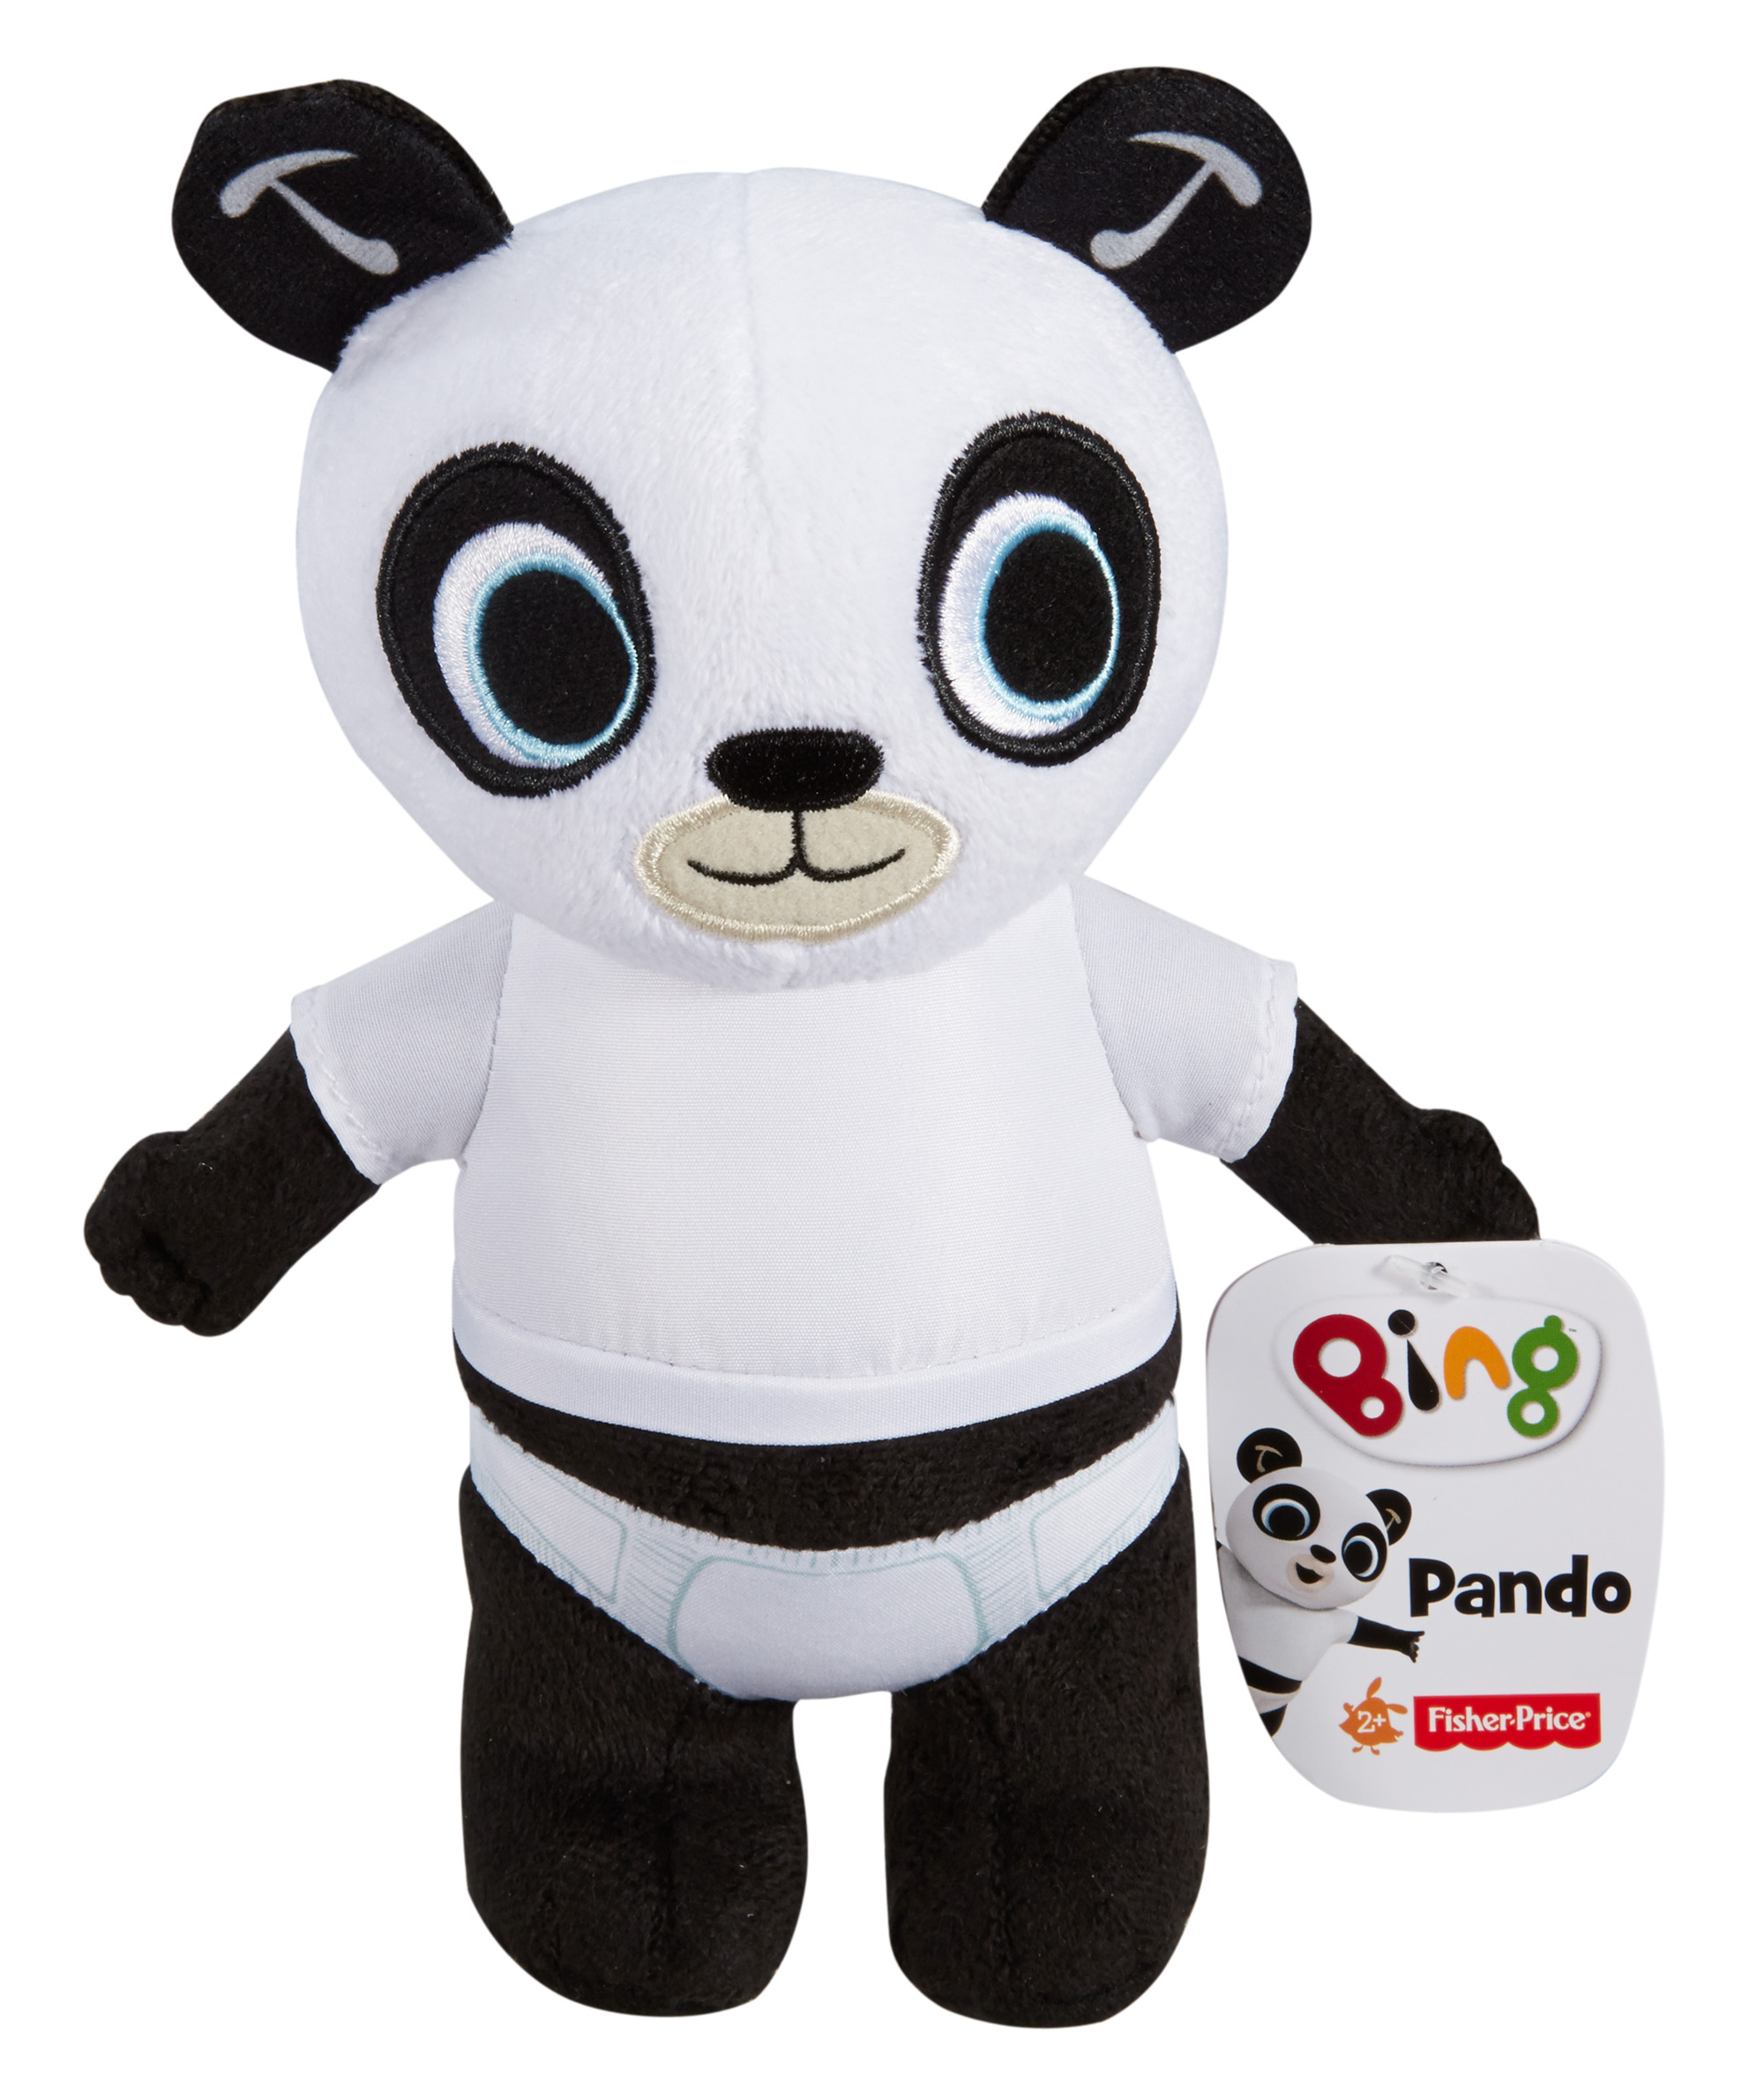 Bing Storytime Panda